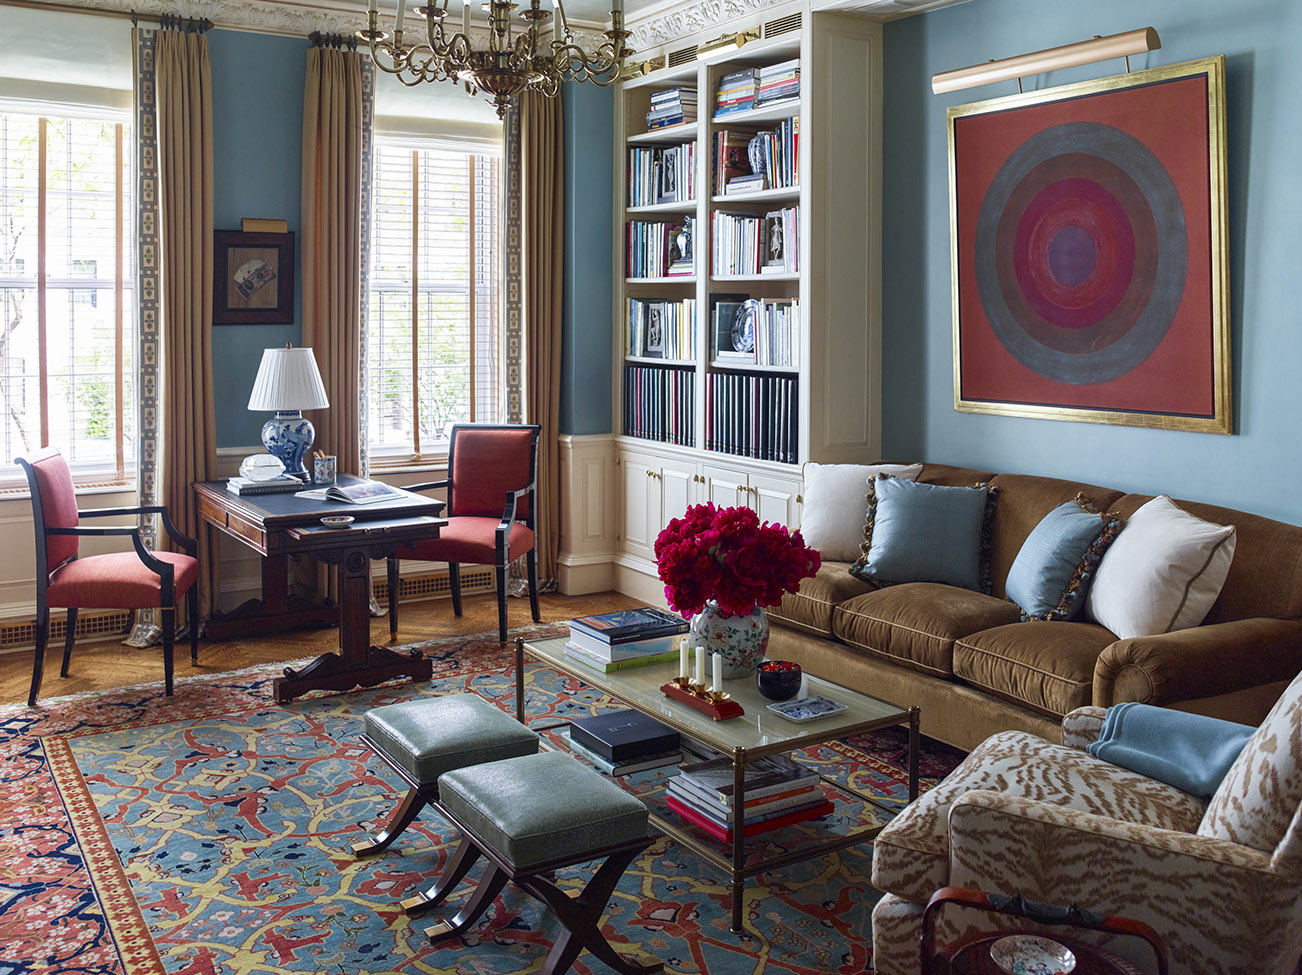 Salon de style classique d’un appartement new-yorkais avec murs peints en bleu, meubles capitonnés somptueux et petit tapis tissé multicolore.